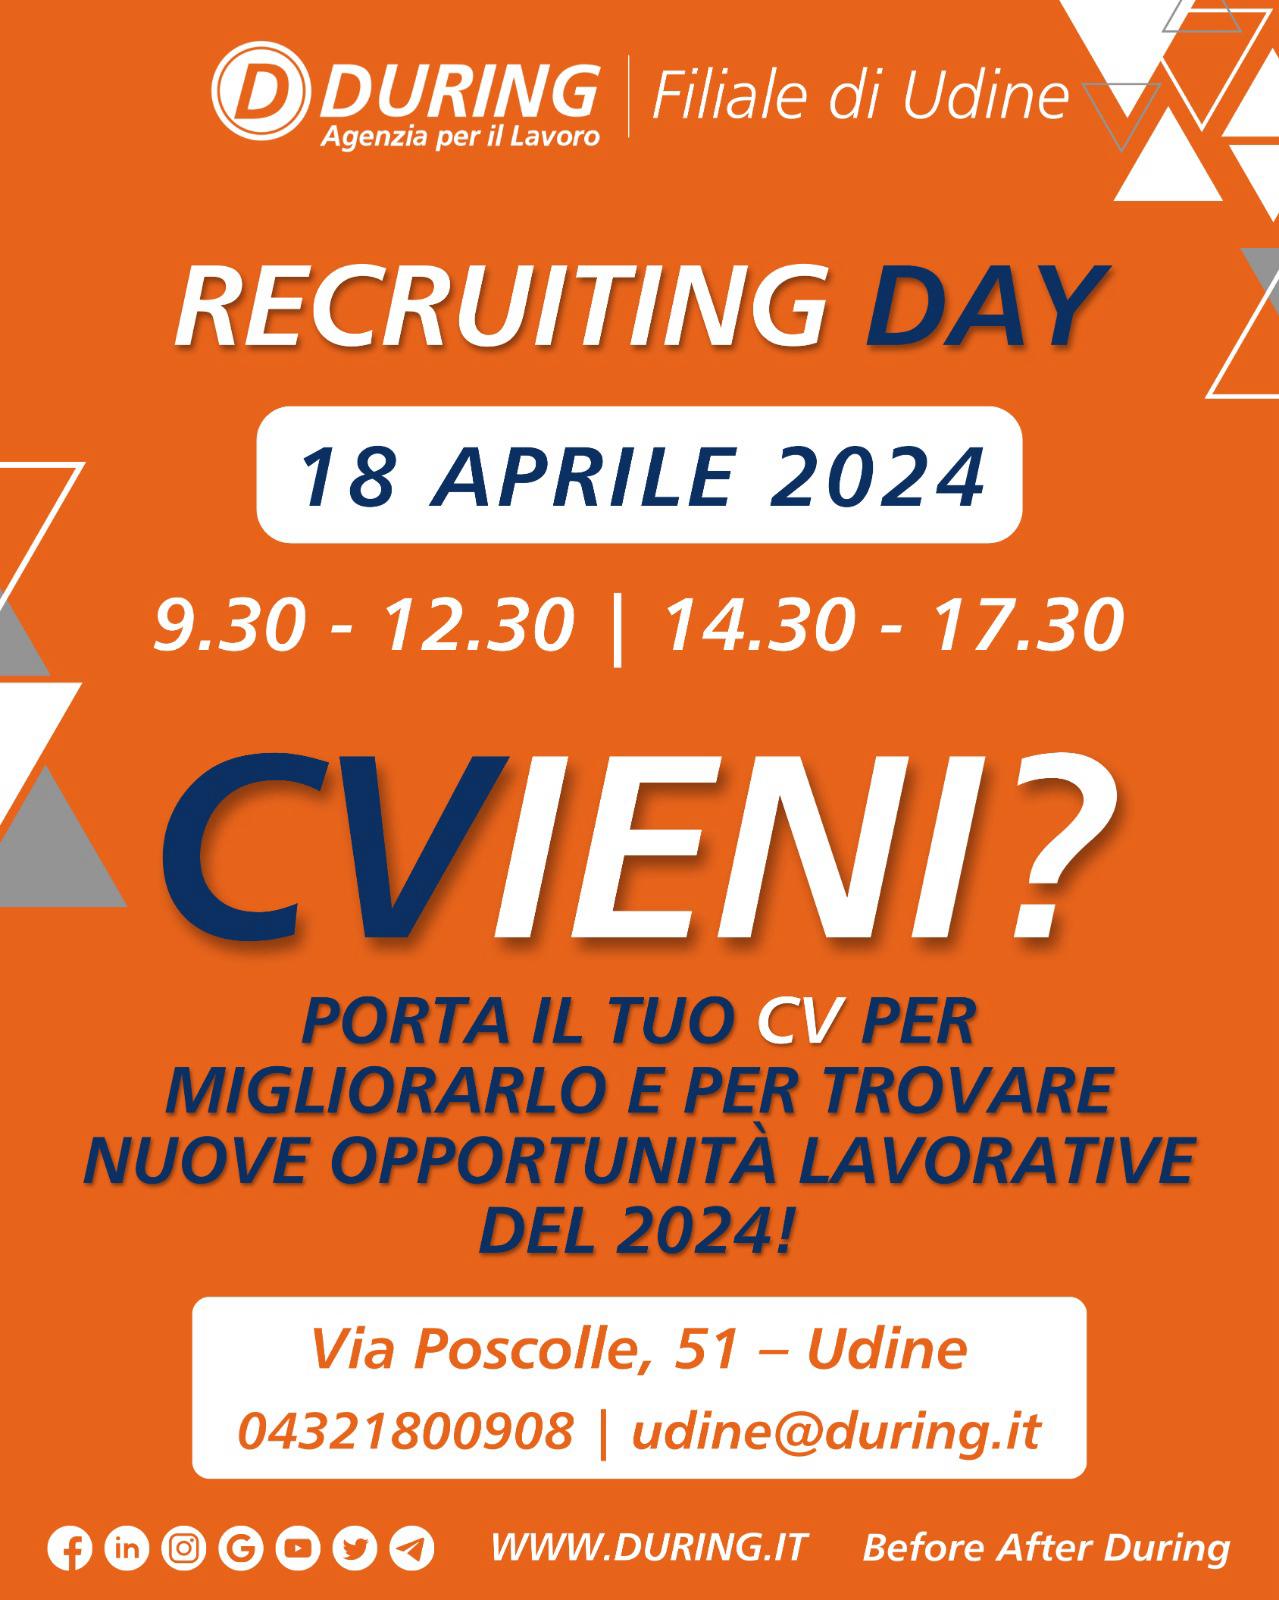 RECRUITING DAY "CVieni?" - DURING Agenzia per il Lavoro sede di Udine